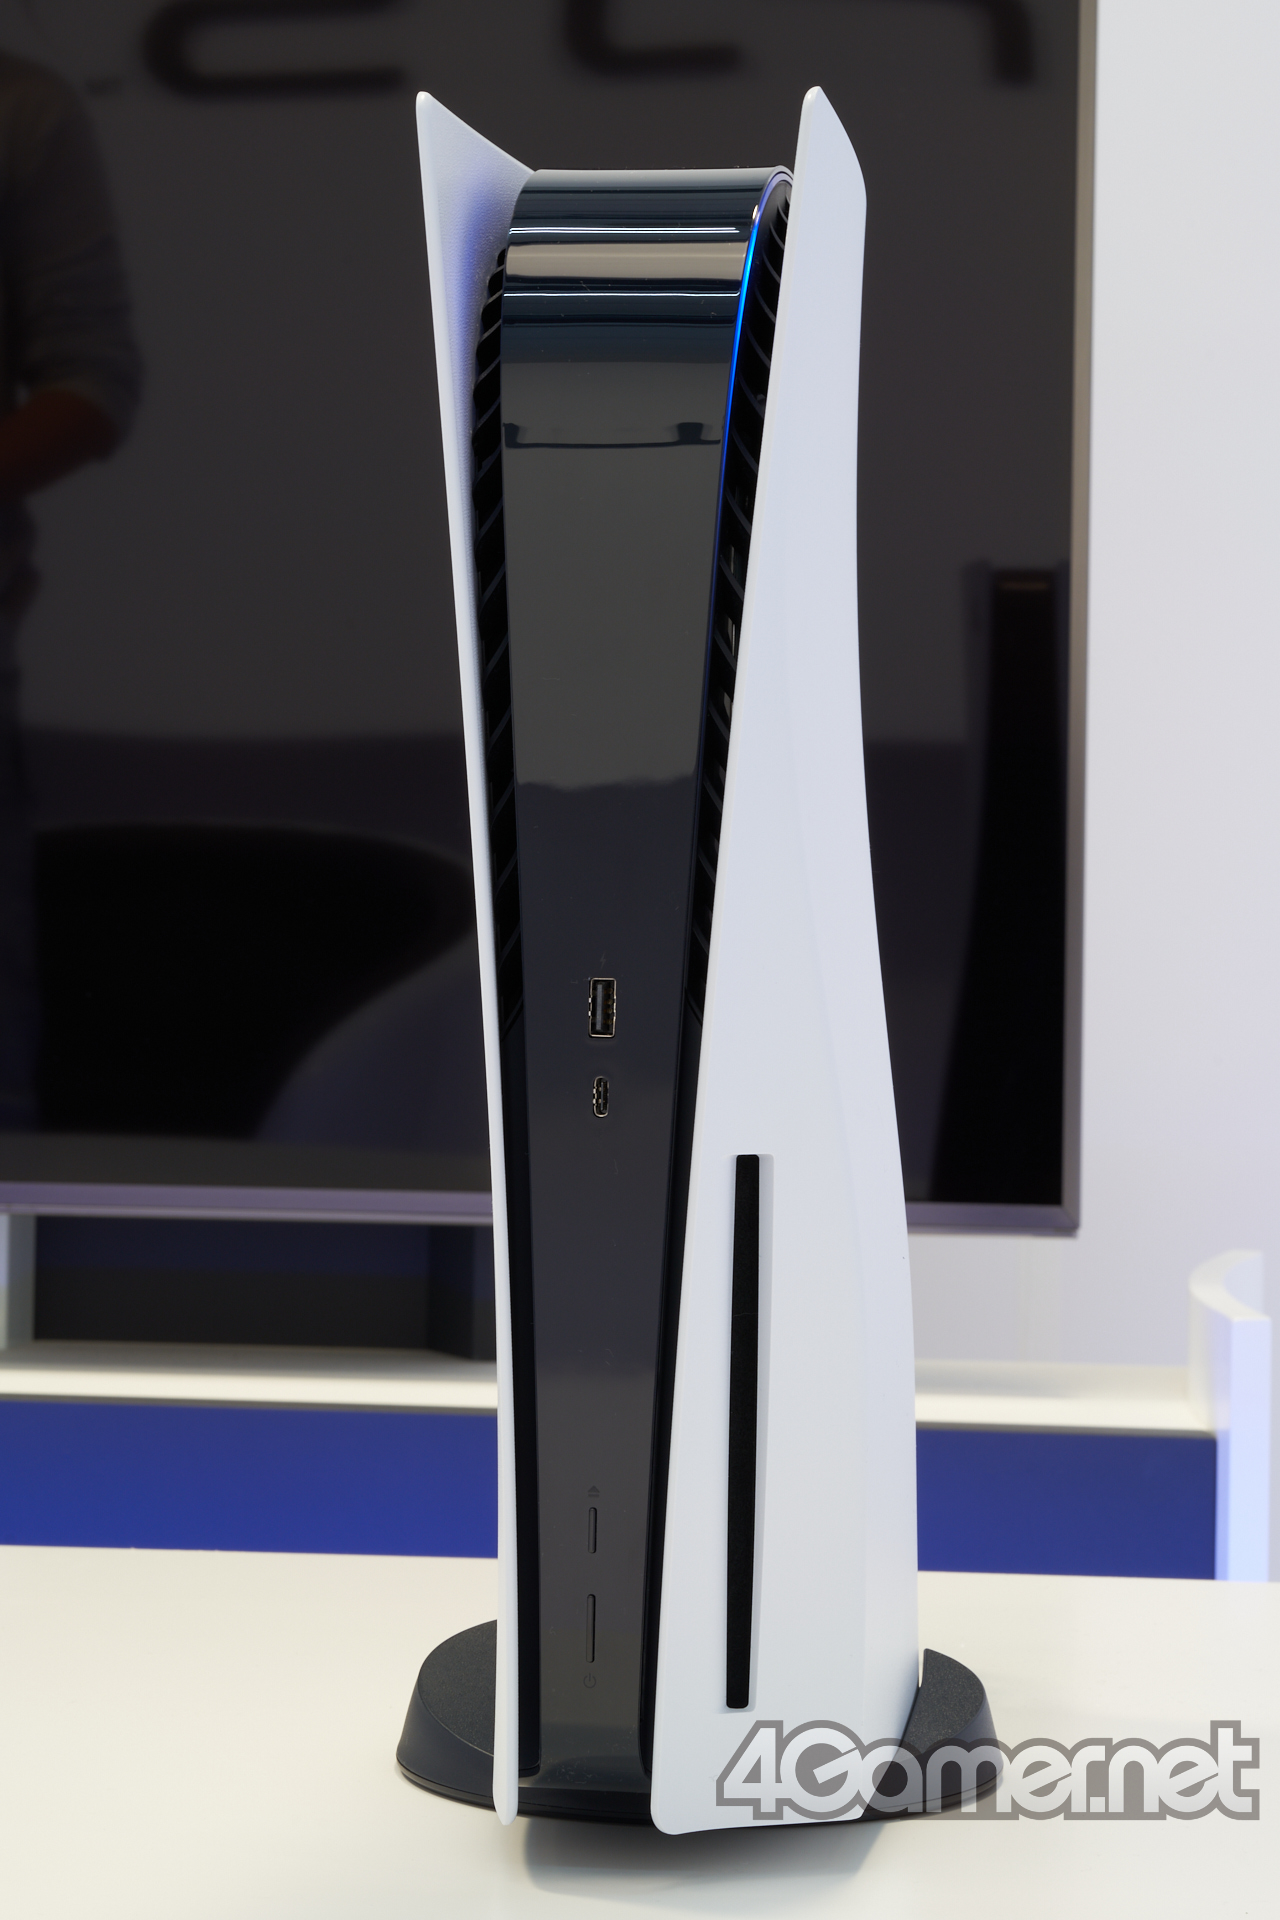 索尼确认PS5确认键为X 多段演示视频和真机照